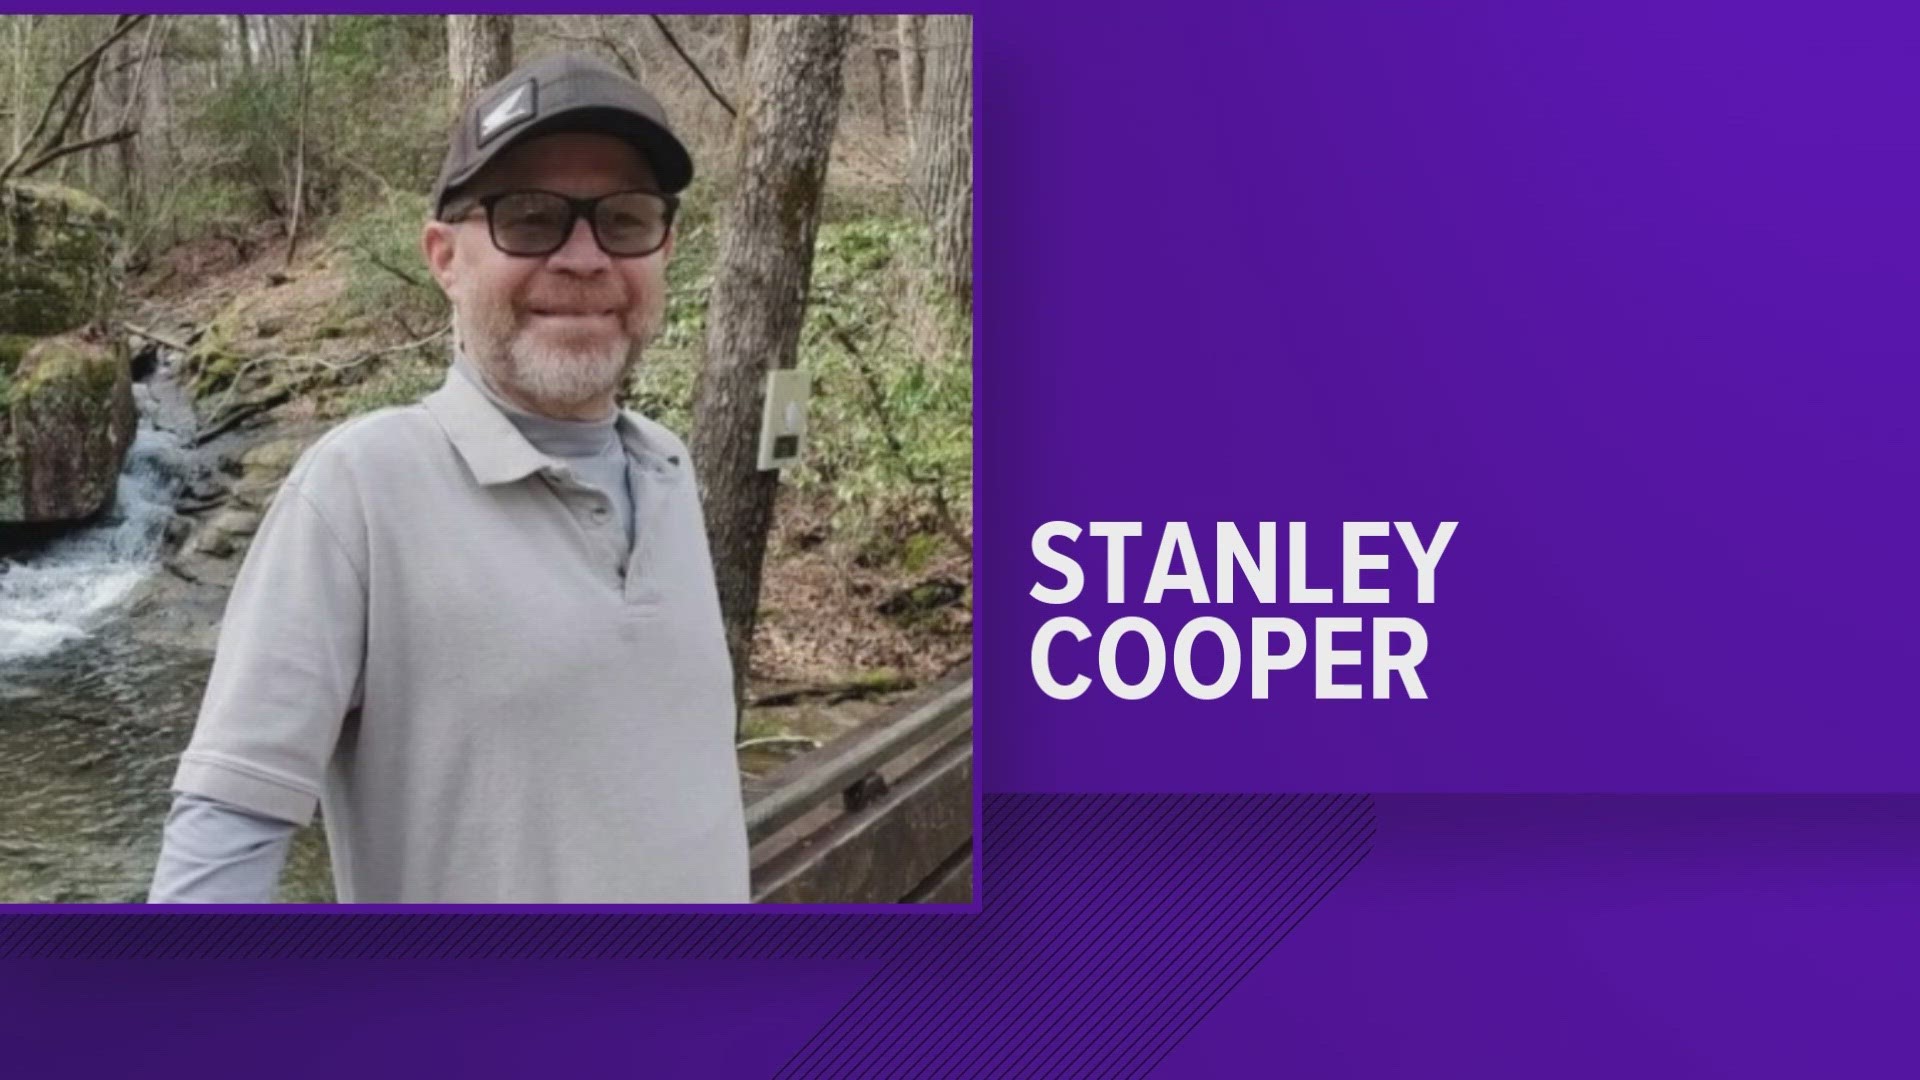 Stanley Cooper was found Saturday Afternoon.